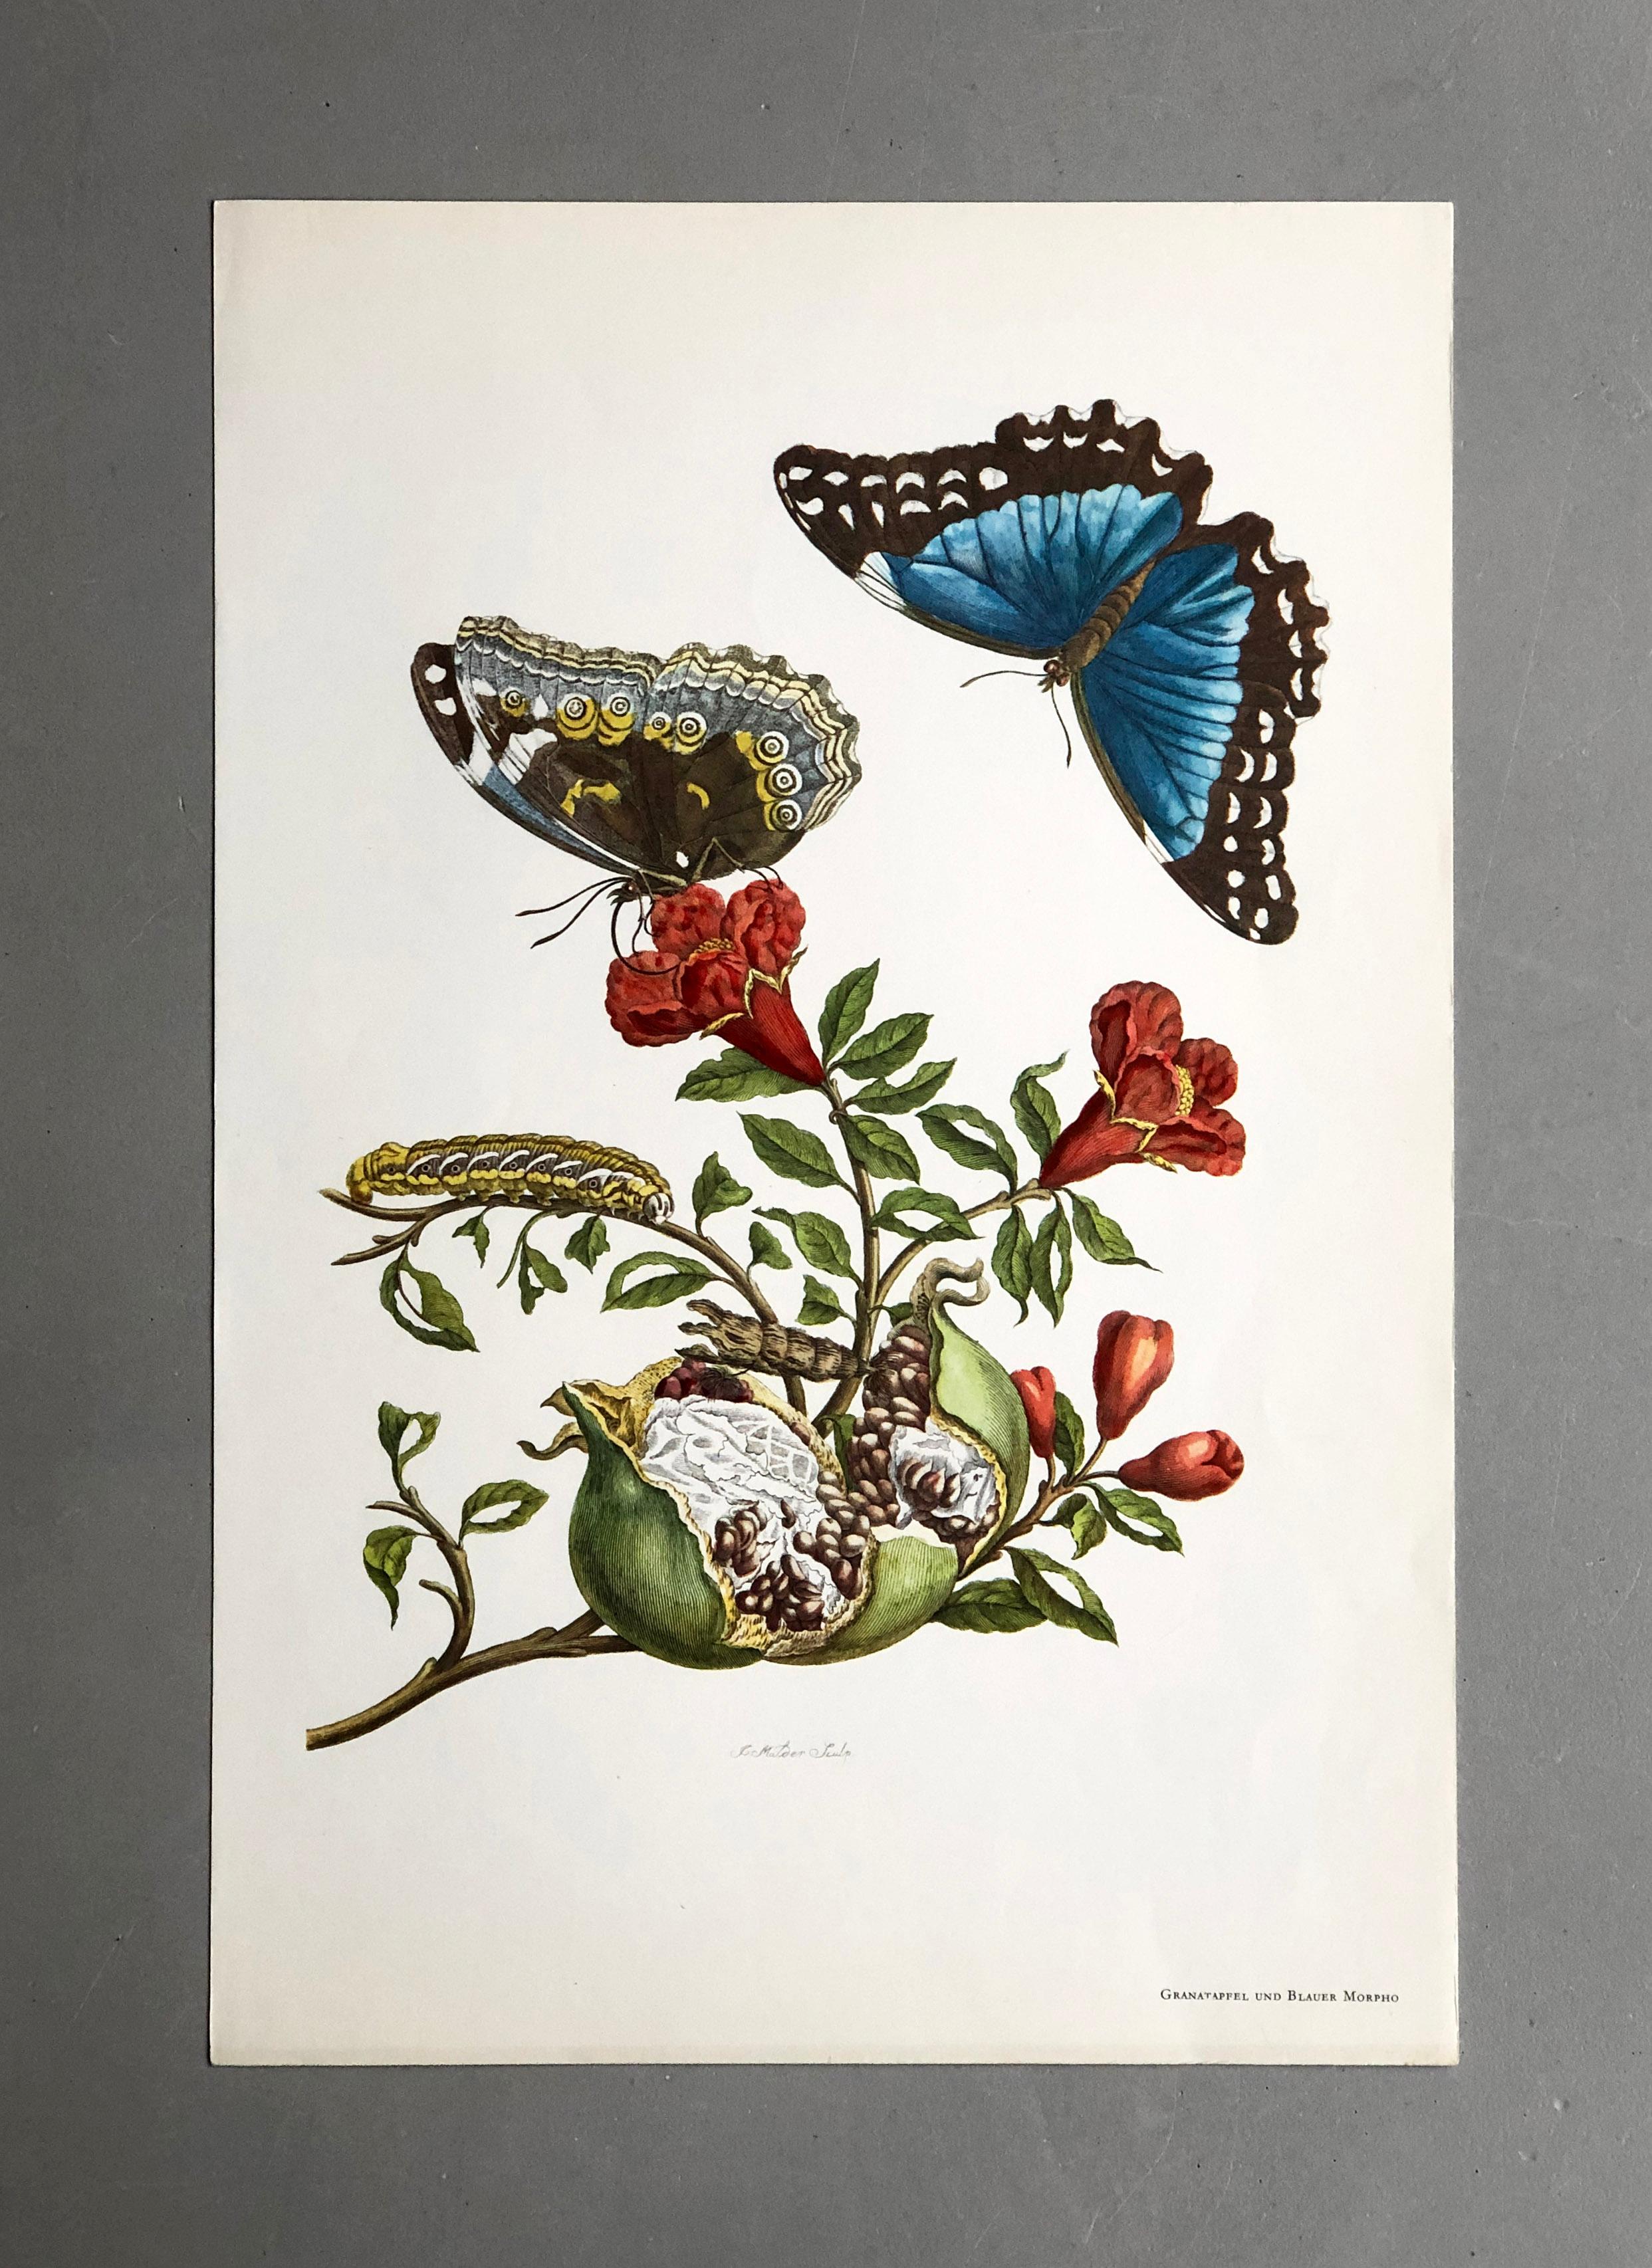 De la Metamorfosis Insectorum Surinamensium, publicada por primera vez en 1705
Grabados de J. Mulder, P. Sluyter (Sluiter) y D. Stoopendaal según Maria Sybilla Merian.

Esta lámina forma parte de una colección completa que comprende 17 láminas.